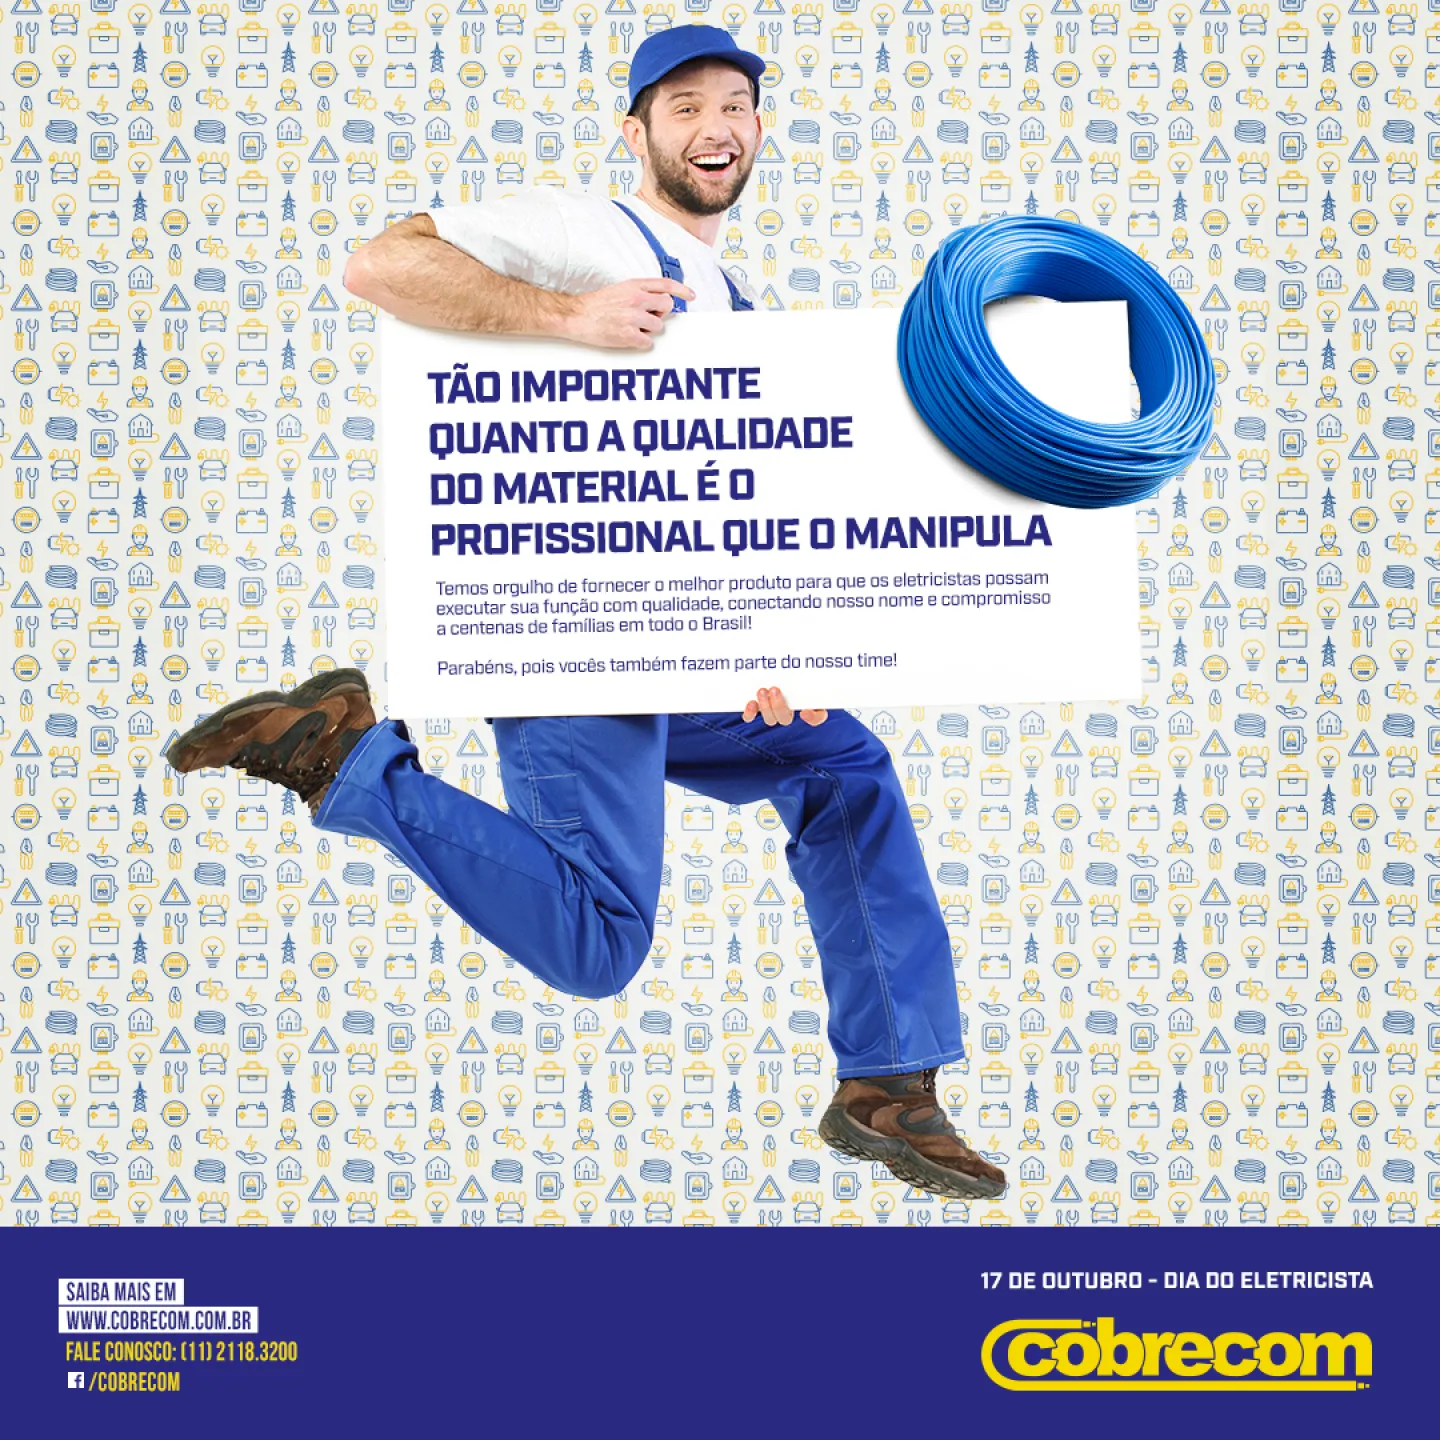 IFC/COBRECOM promove evento em comemoração ao mês do eletricista | Cobrecom